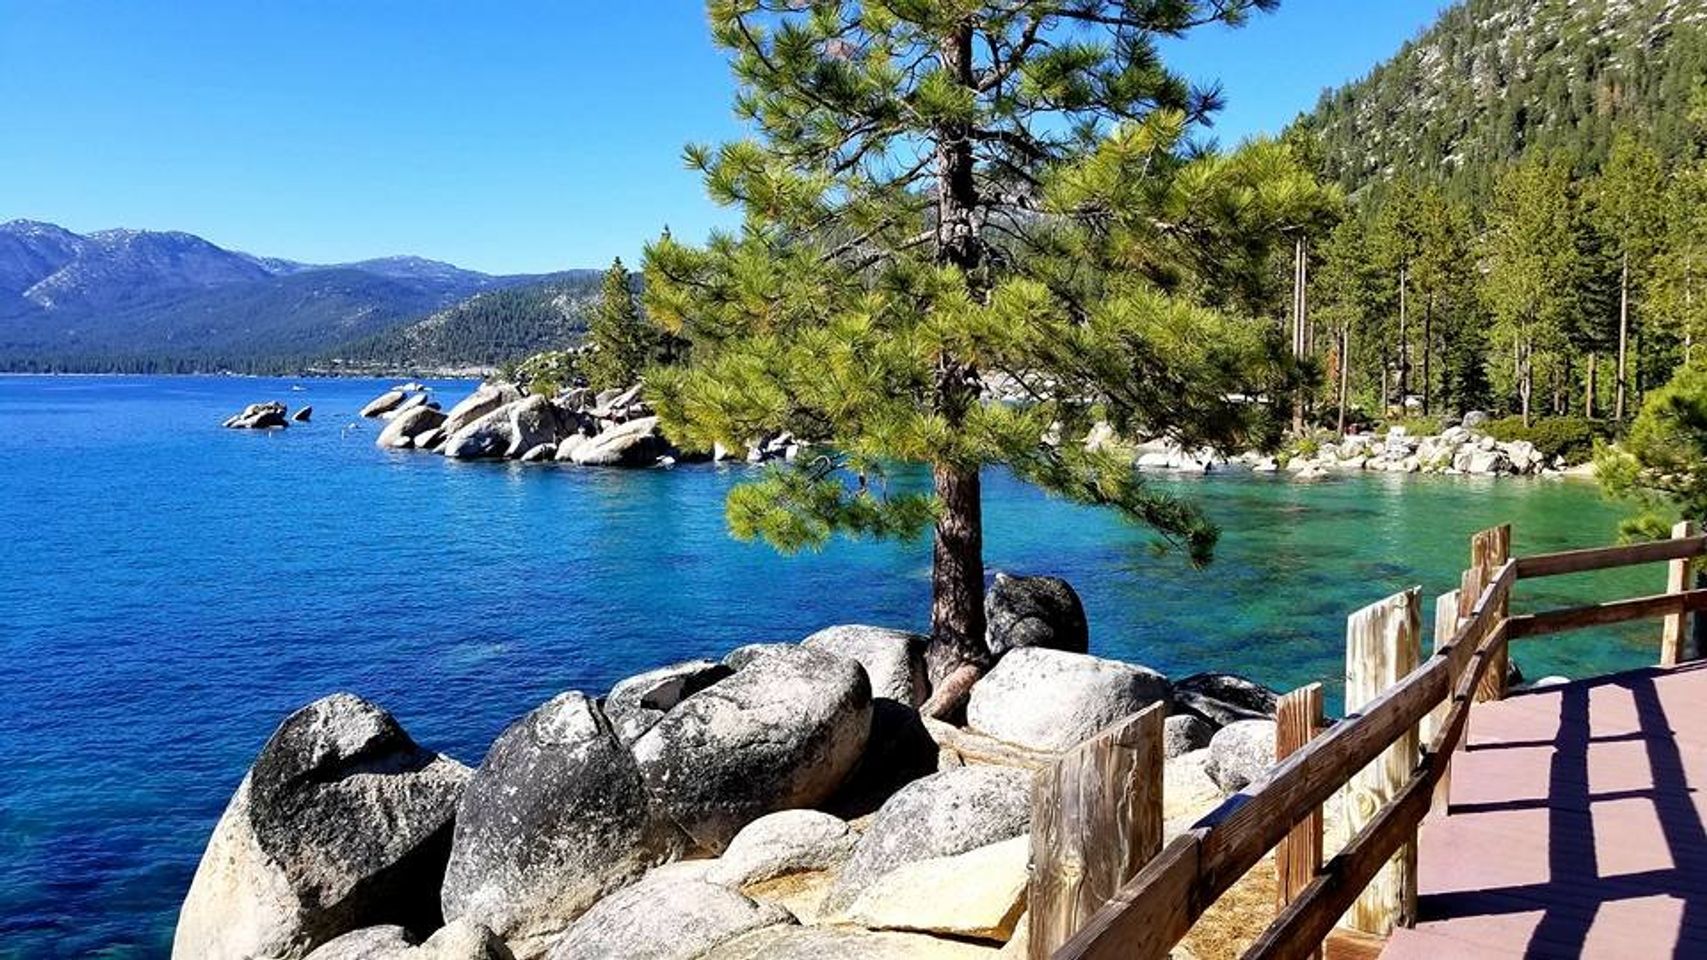 Découvrez la magie de Sand Harbor: le joyau caché du lac Tahoe.